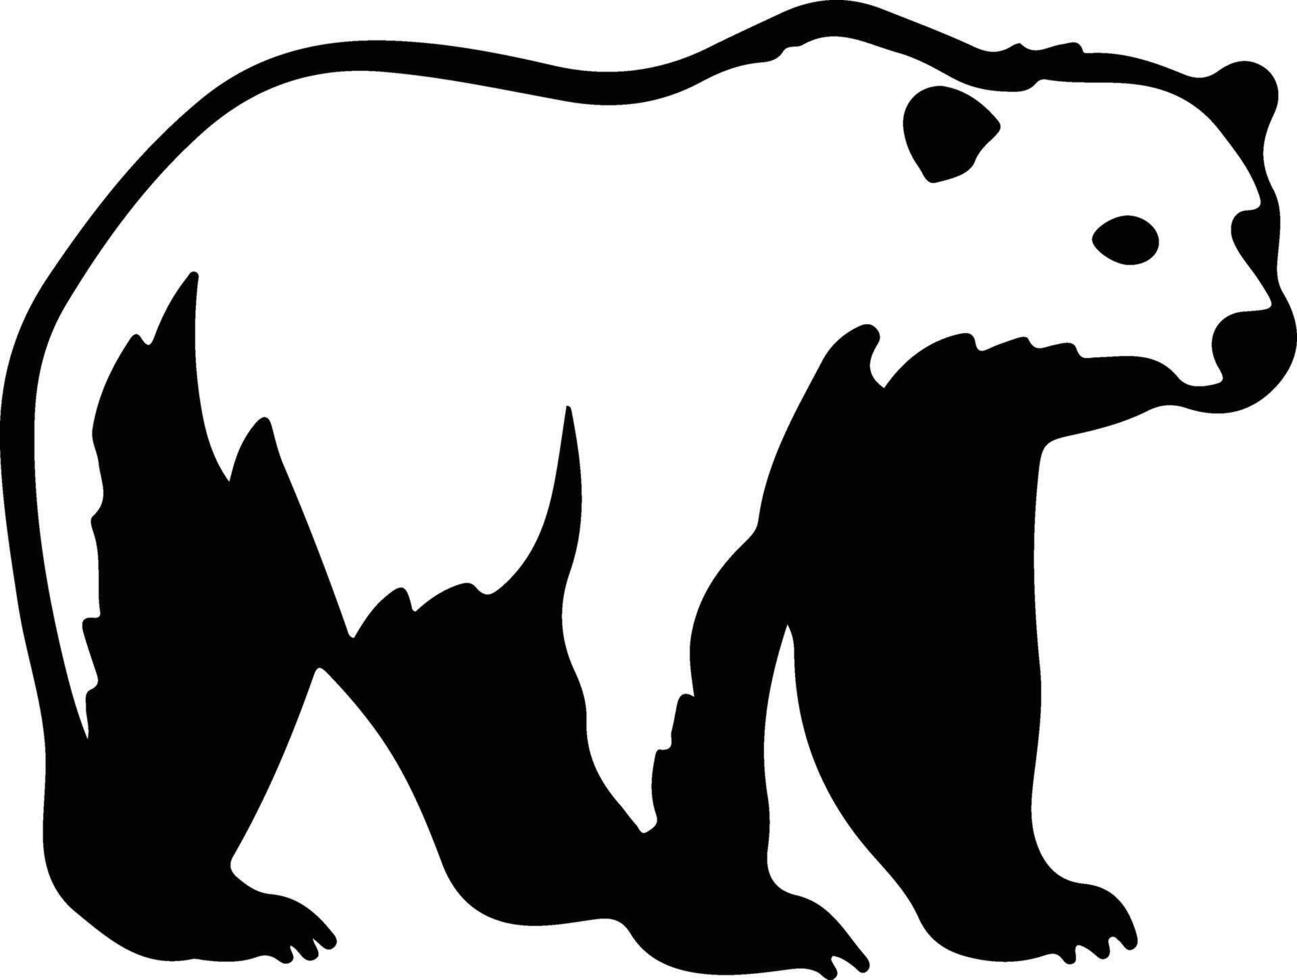 polare orso nero silhouette vettore